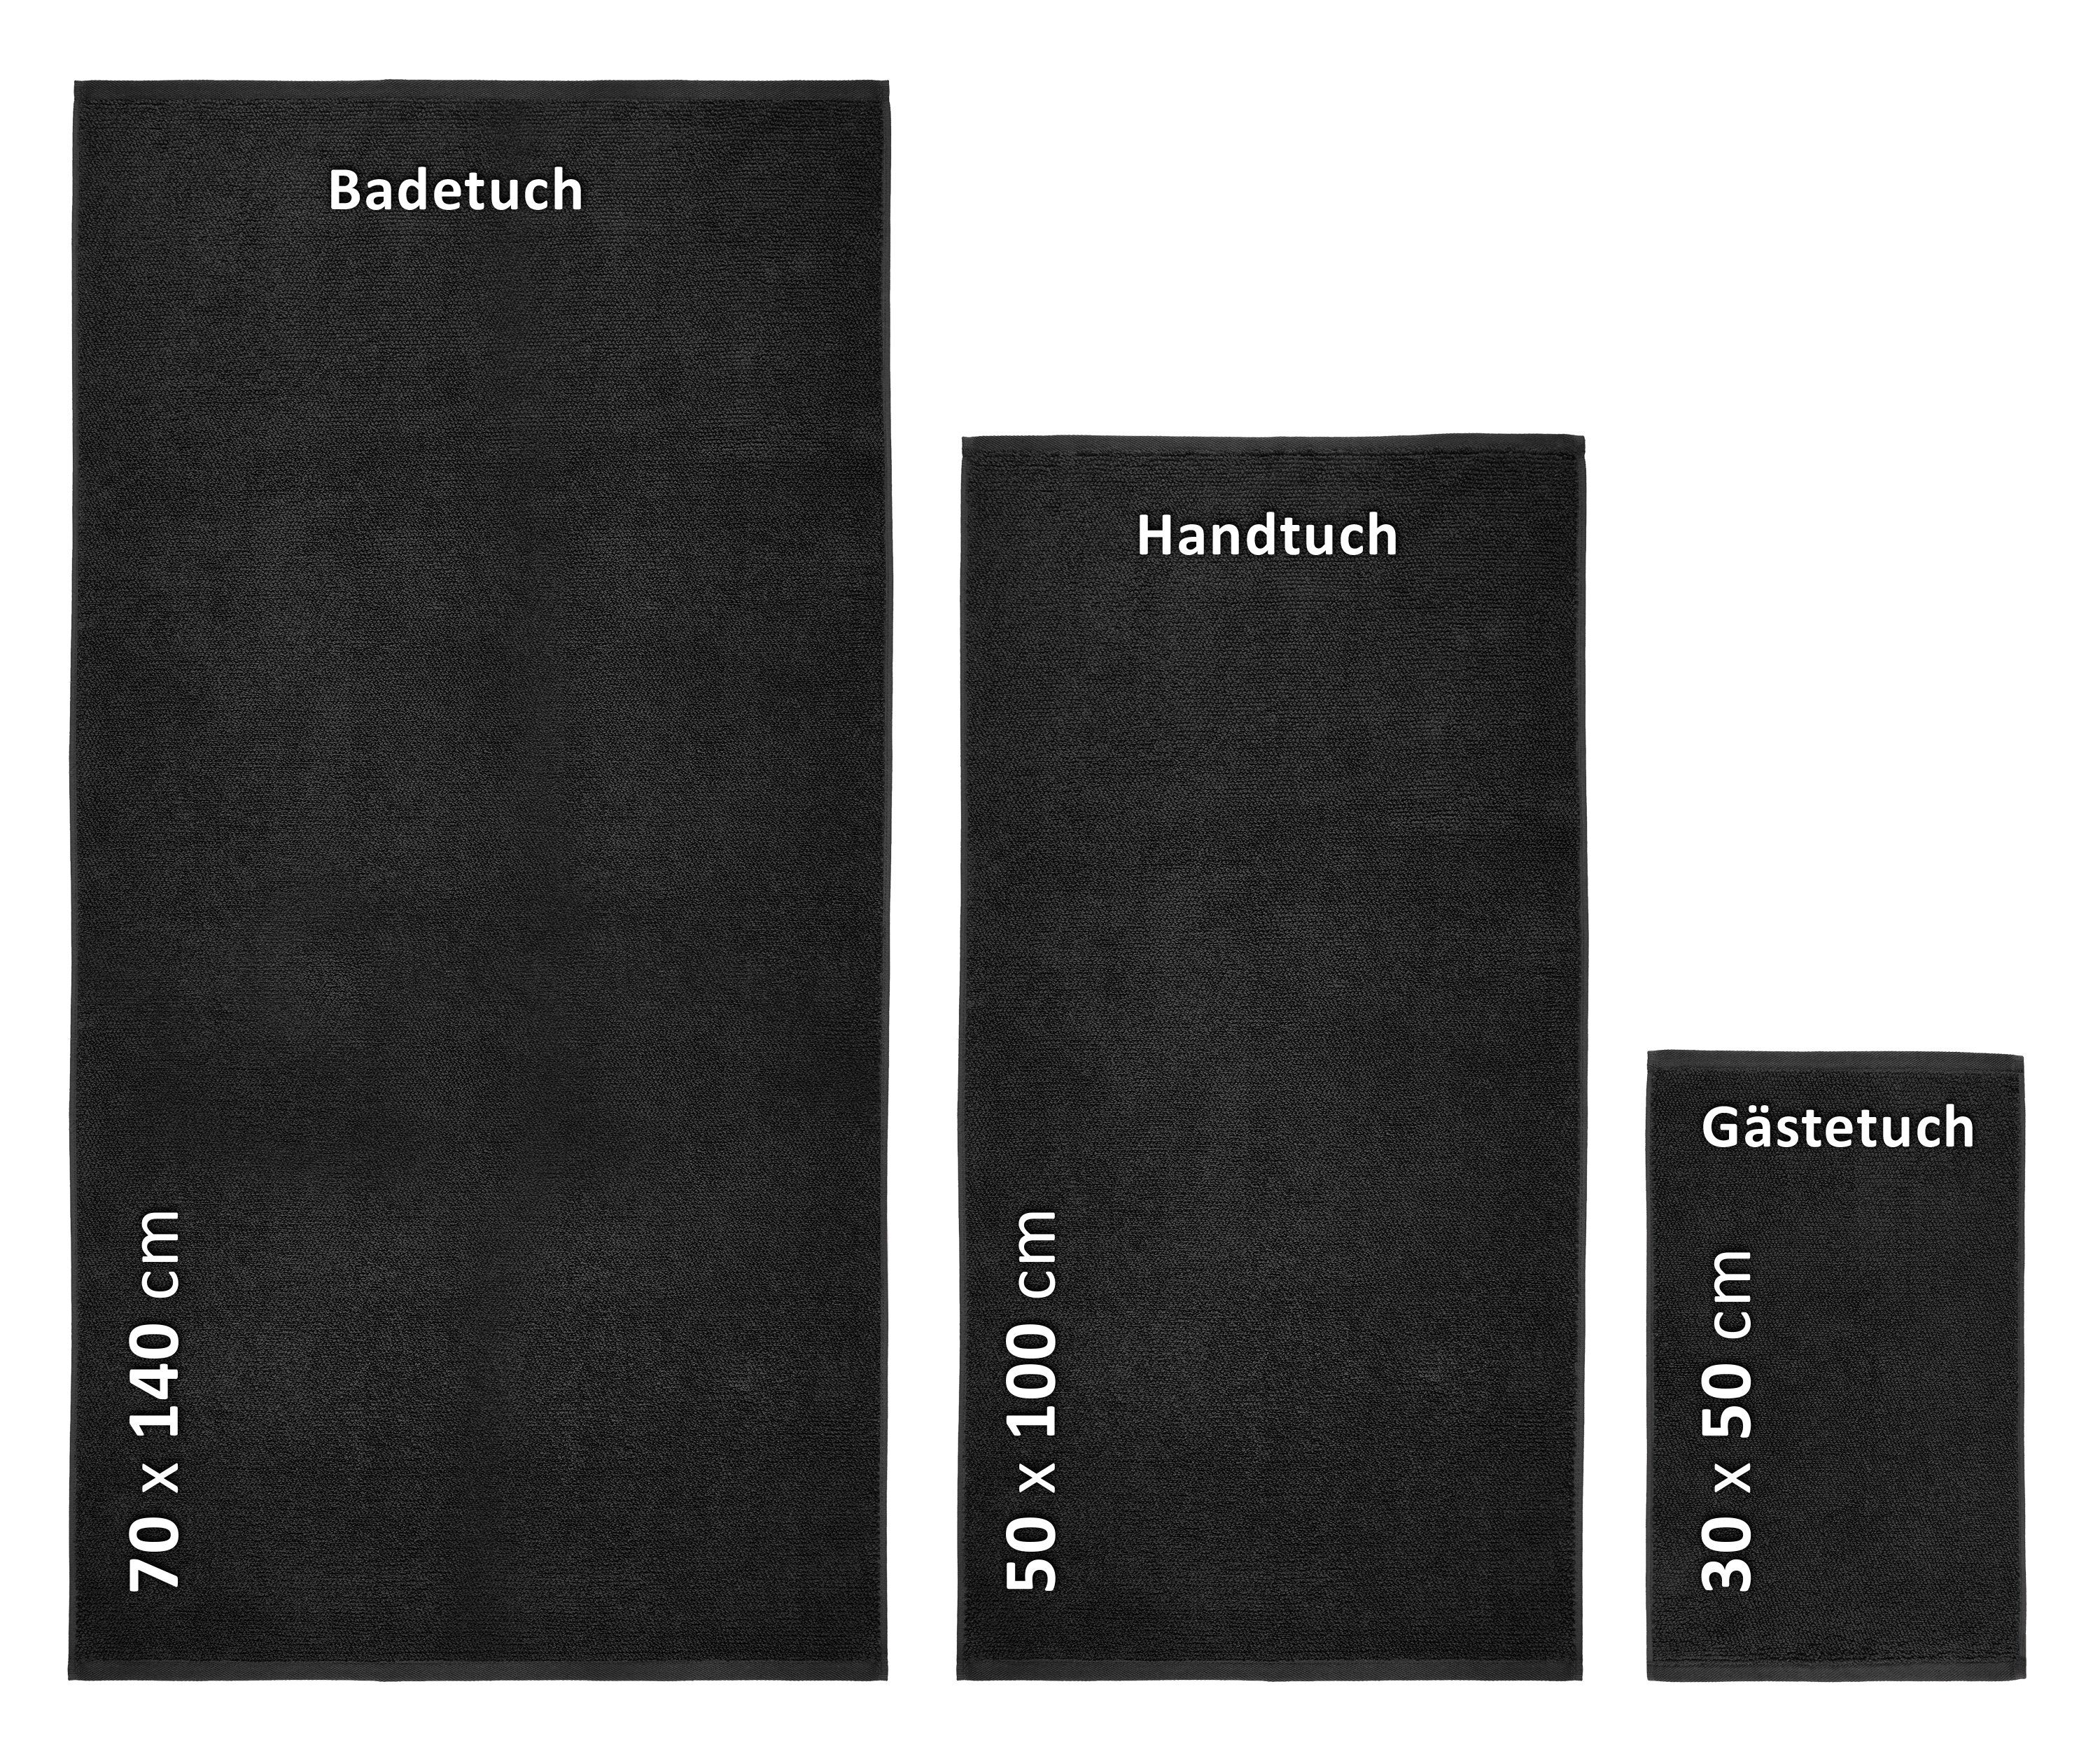 Europe, in Set 550g/m) Set, Set Handtuch 100% Baumwolle Schwarz Beautex (Multischlaufen-Optik, Handtuch Premium Frottier aus Frottier, Made